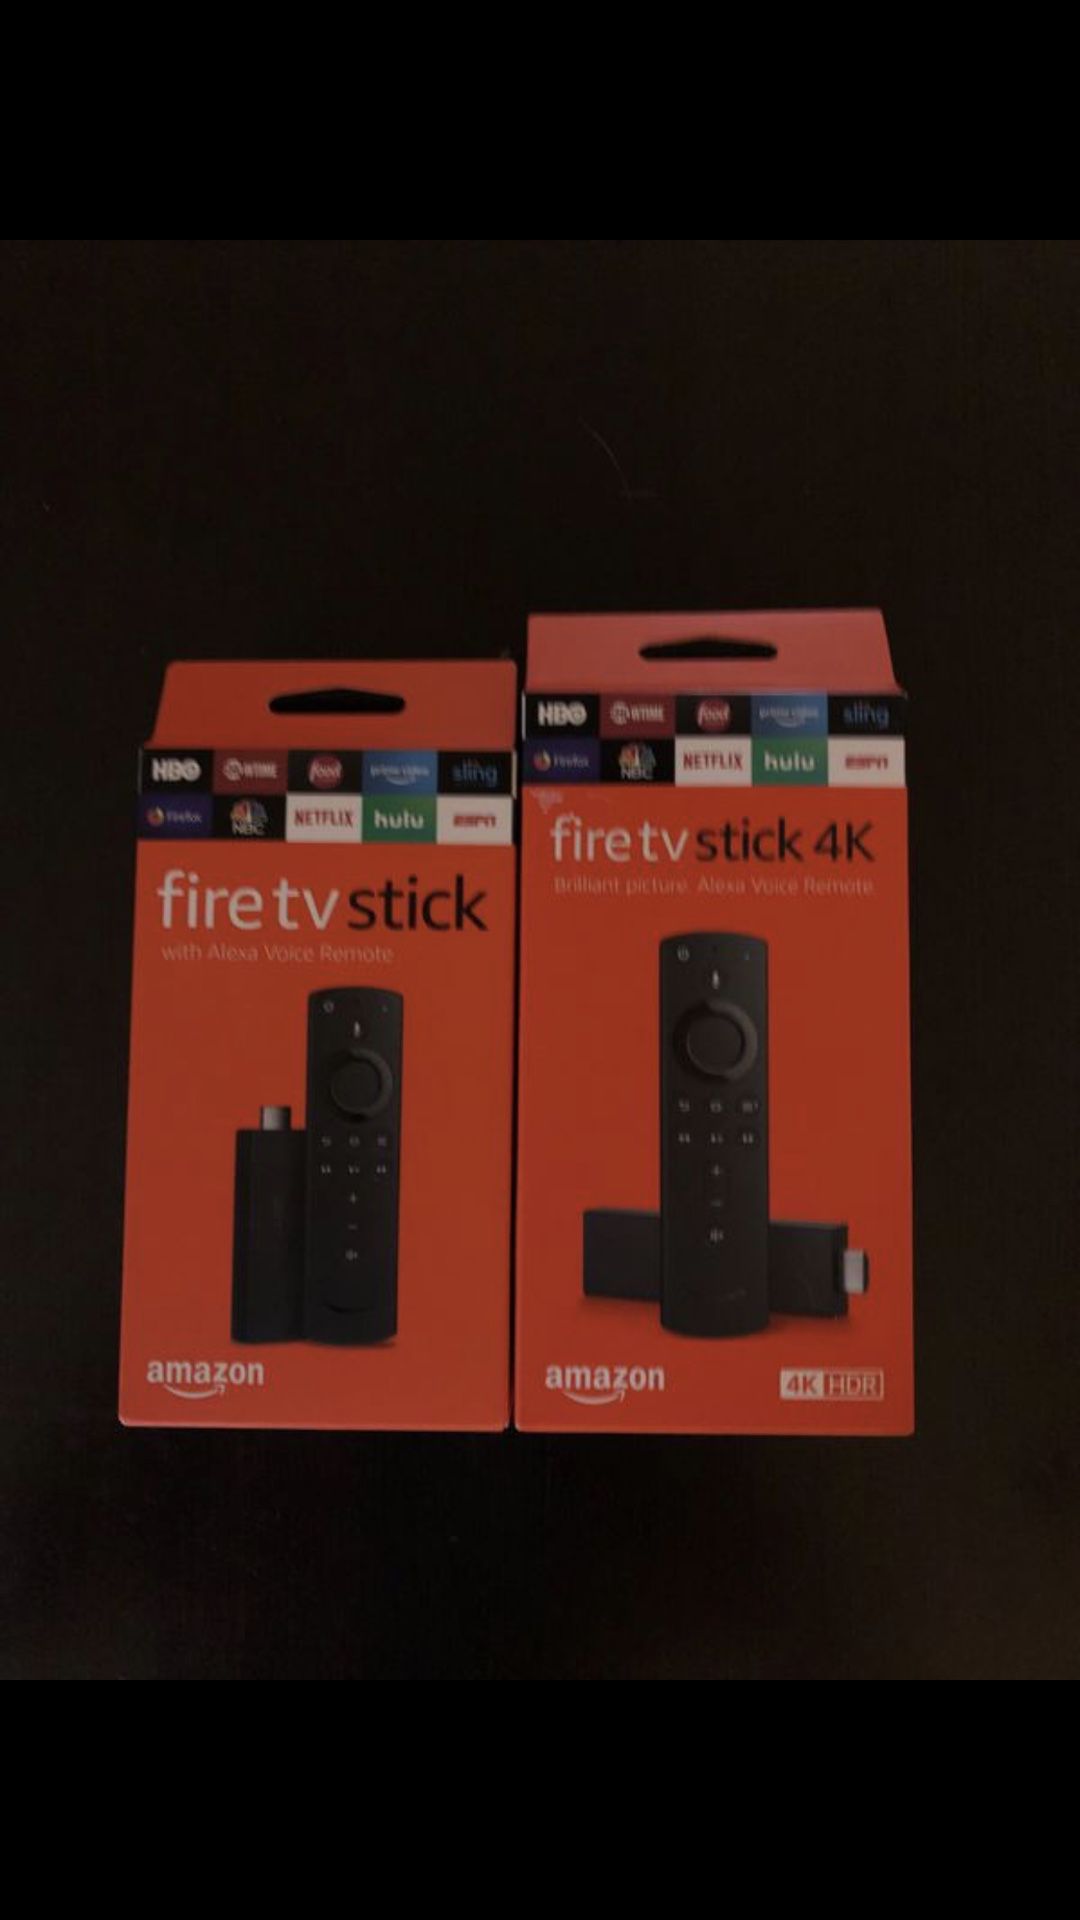 Amazon fire tv sticks - unlocked